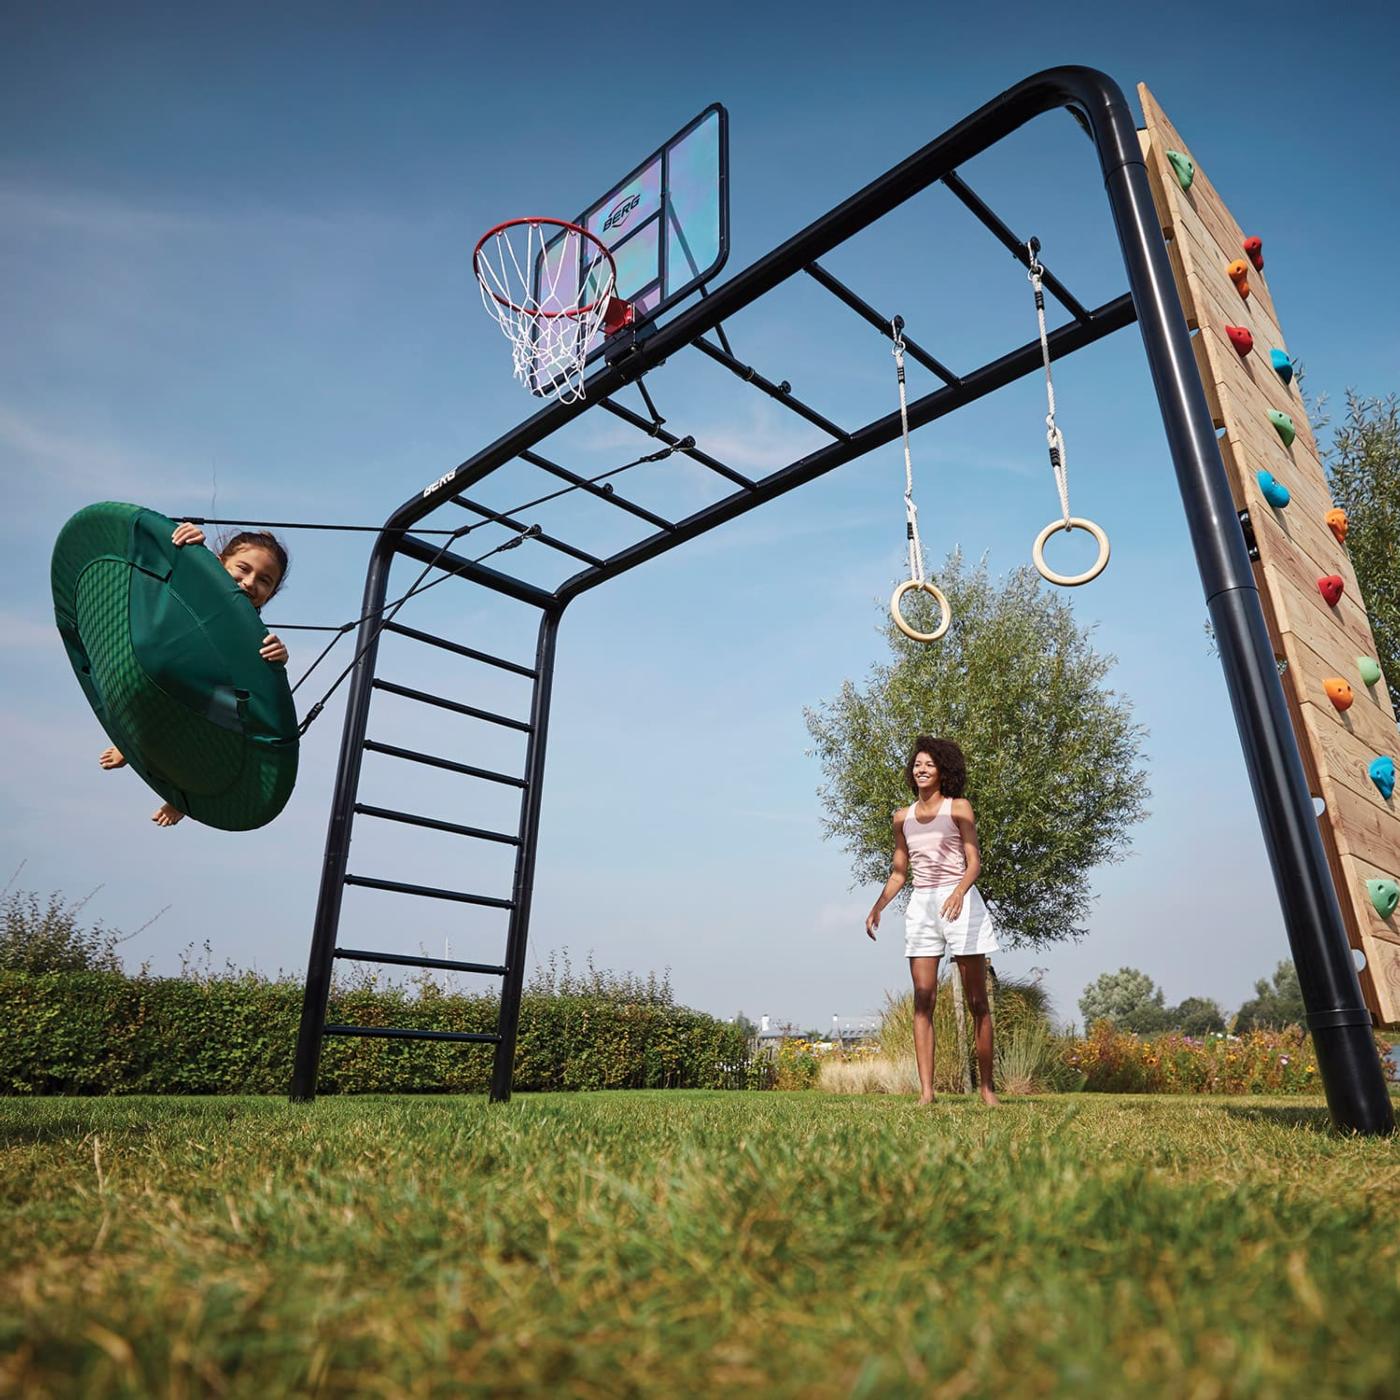 Parque infantil em metal da BERG Playbase para toda a família brincar, fazer desporto, relaxar e brincar.